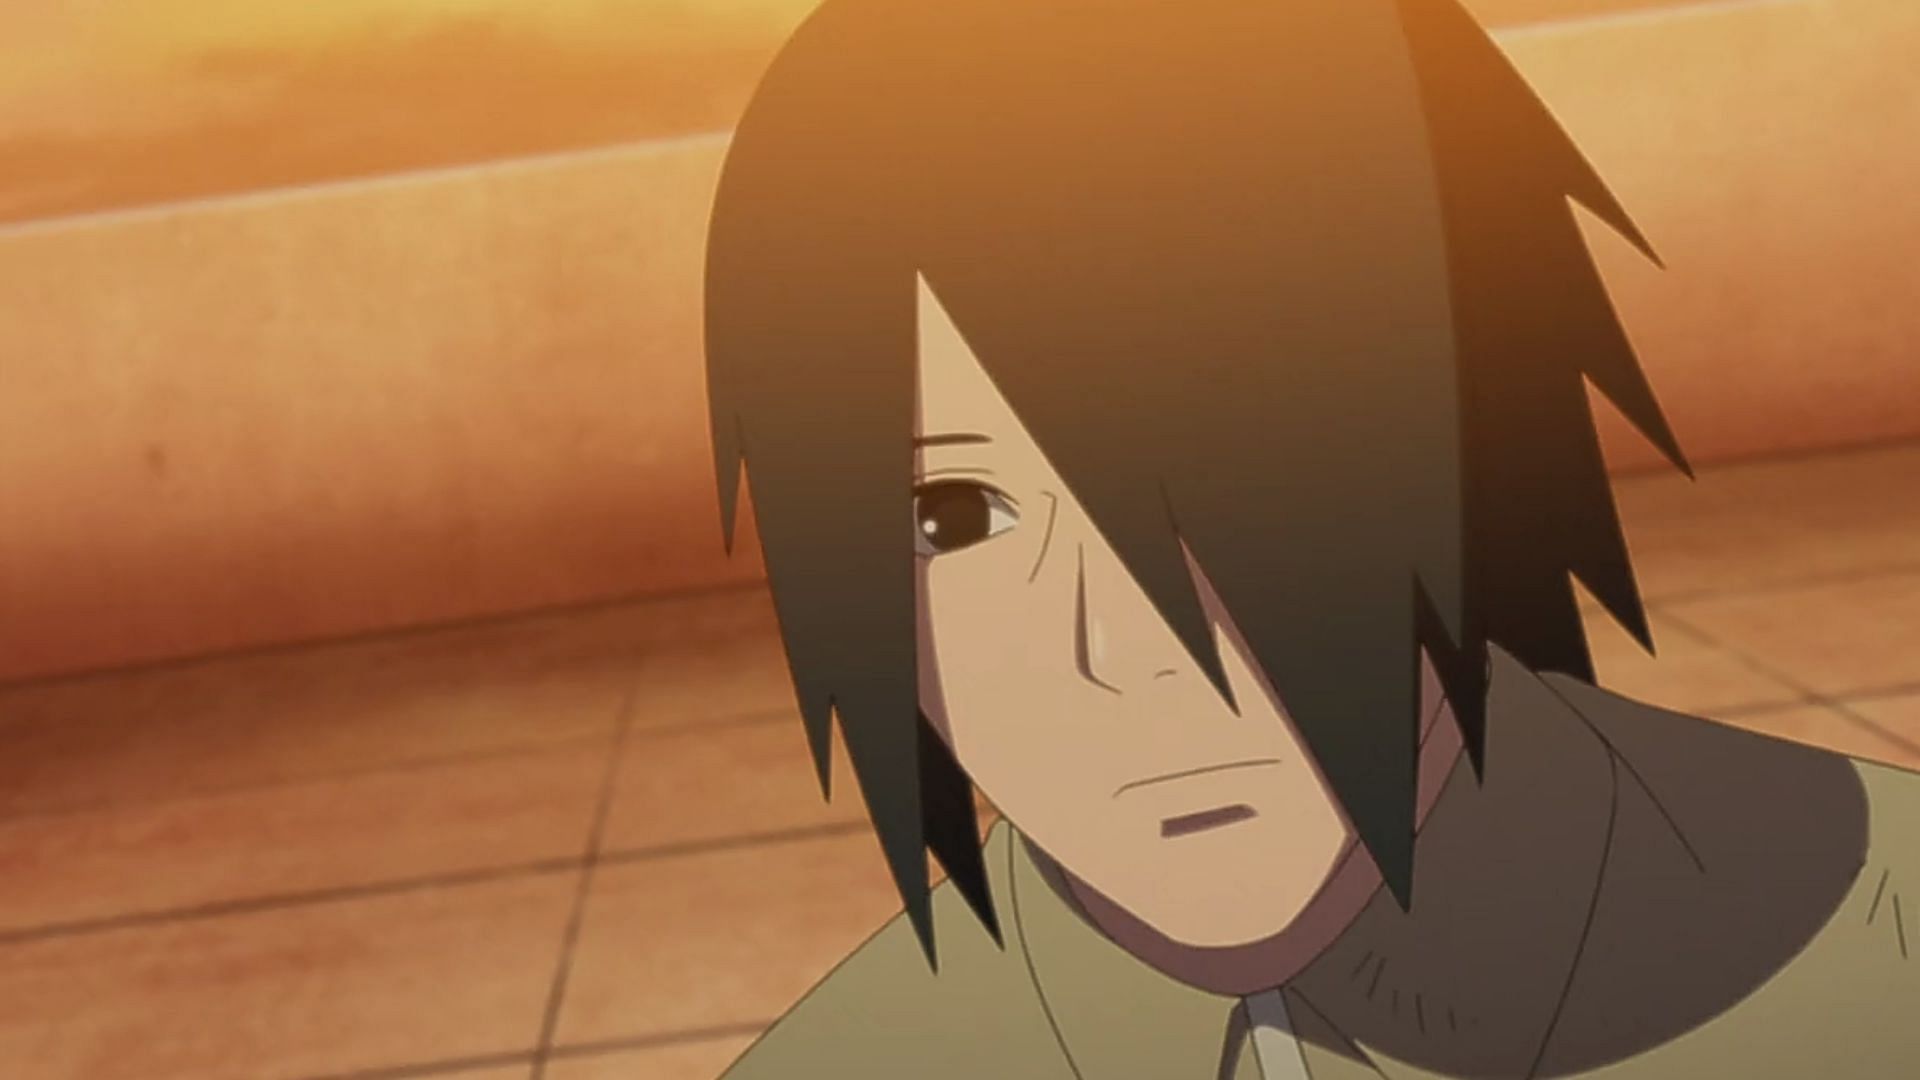 Sasuke (Image via Studio Pierrot)